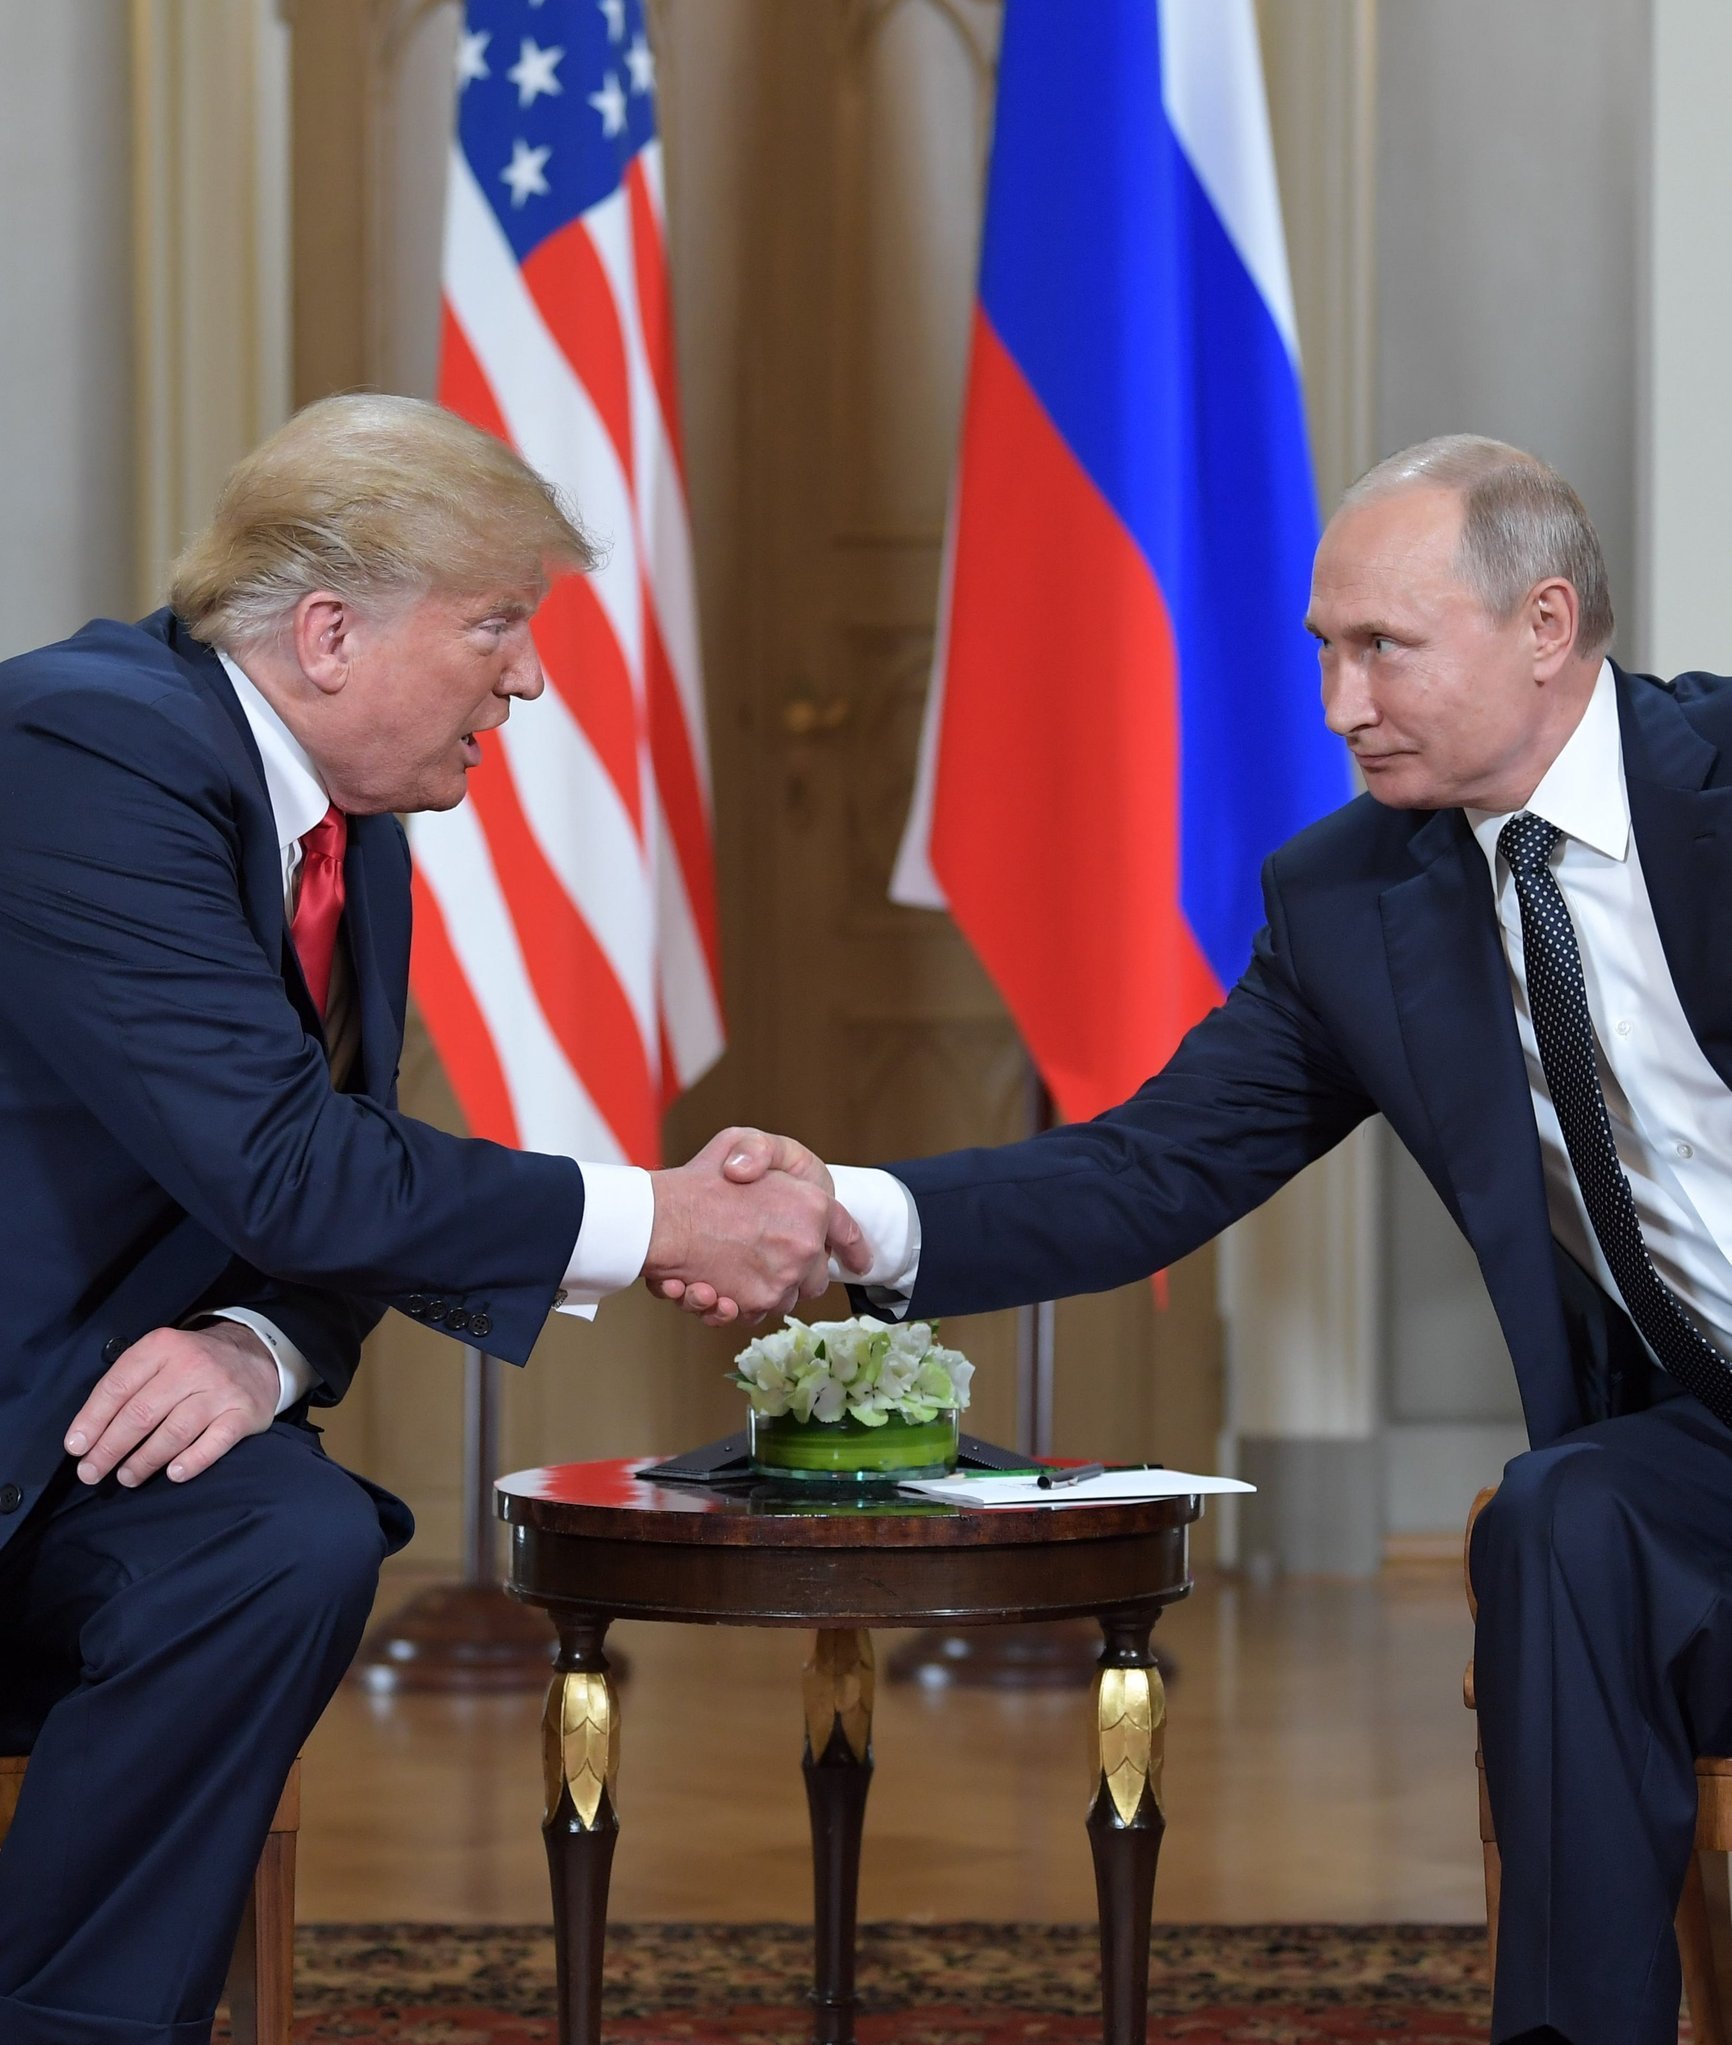 Foreign Policy (США): Трамп встречается с Путиным на полях саммита G20, а украинские моряки остаются в тюрьме